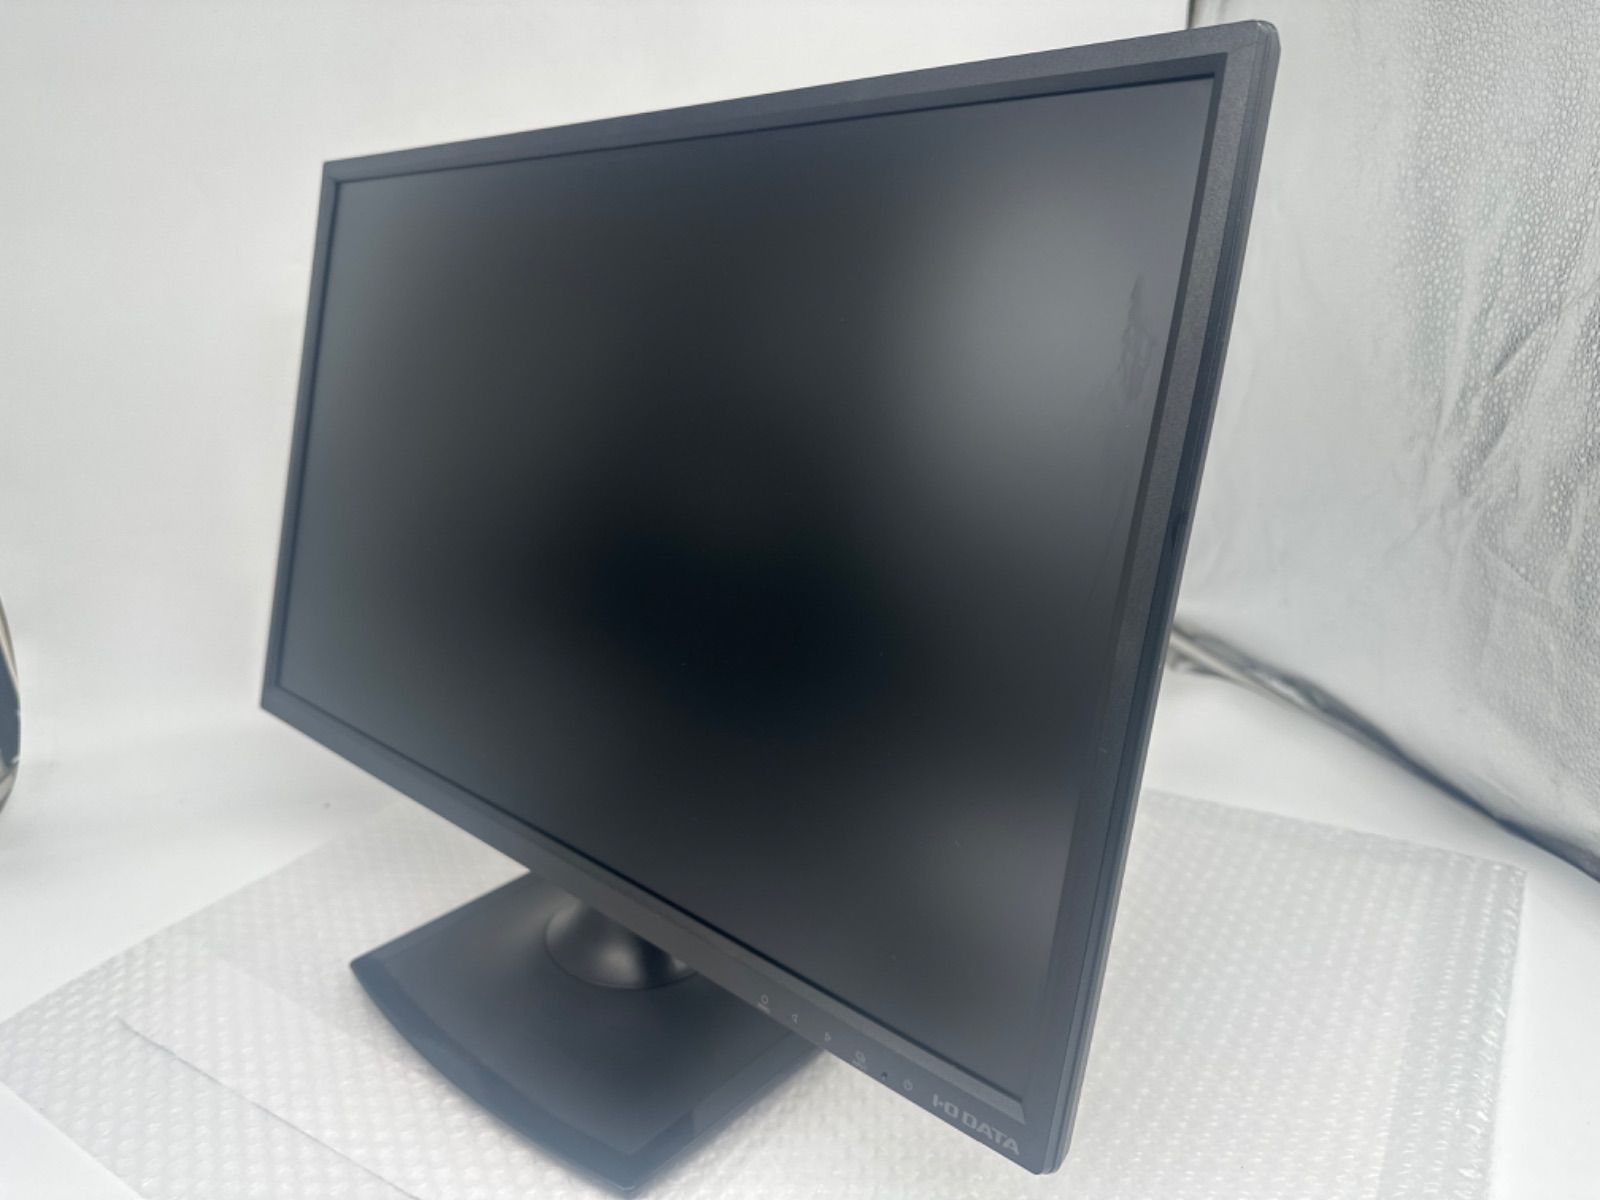 訳あり★I-O DATA 23.8型液晶ディスプレイ ブラック LCD-MF244EDSB 広視野角ADSパネル採用！23.8型ワイド液晶ディスプレイ（HDMI端子＆スピーカー搭載モデル）